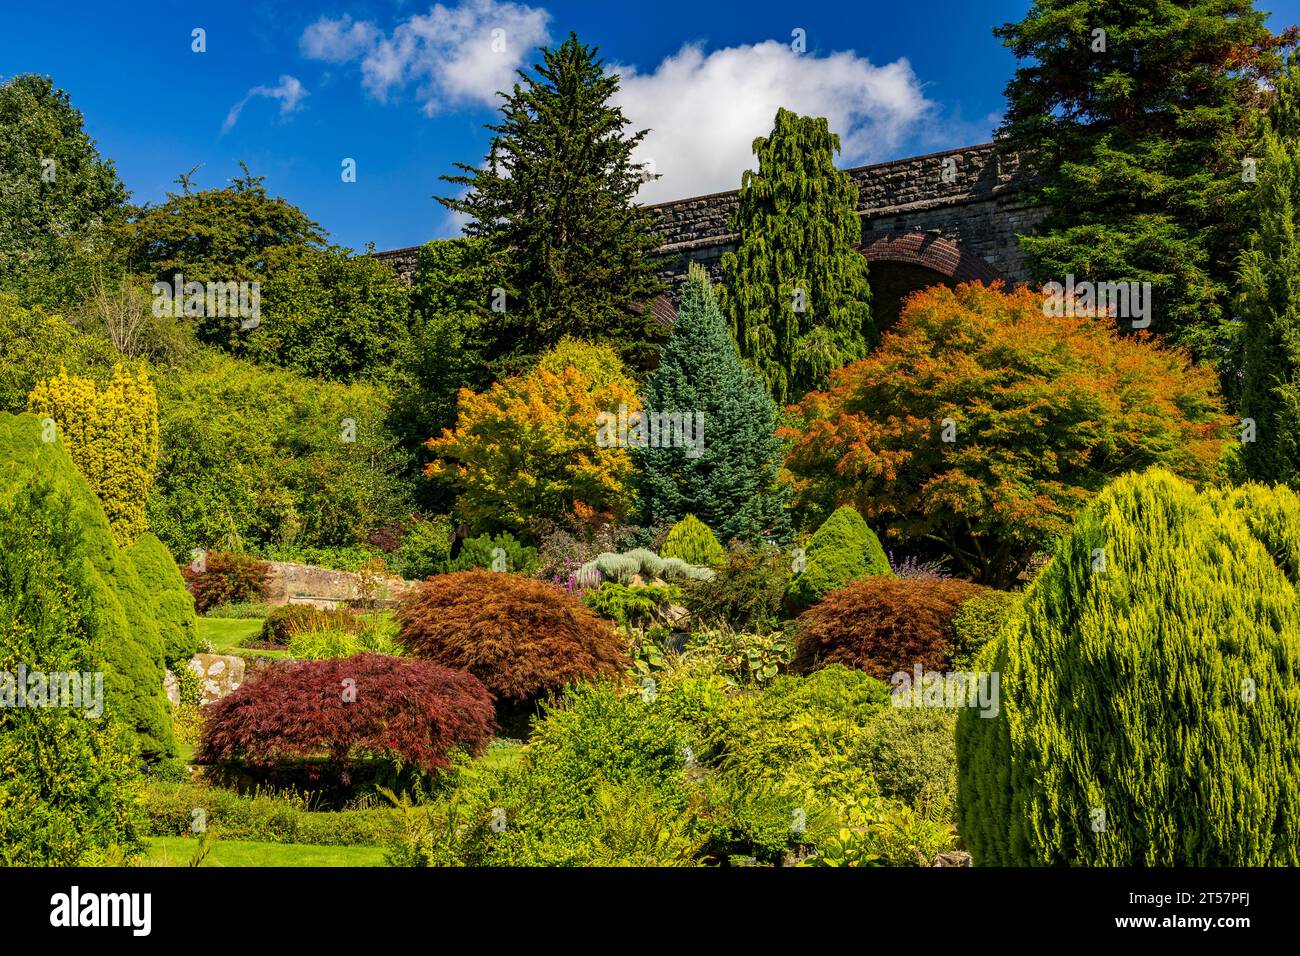 La colección inmaculadamente mantenida de árboles y arbustos en Kilver Court Gardens, Shepton Mallet, Somerset, Inglaterra, Reino Unido Foto de stock